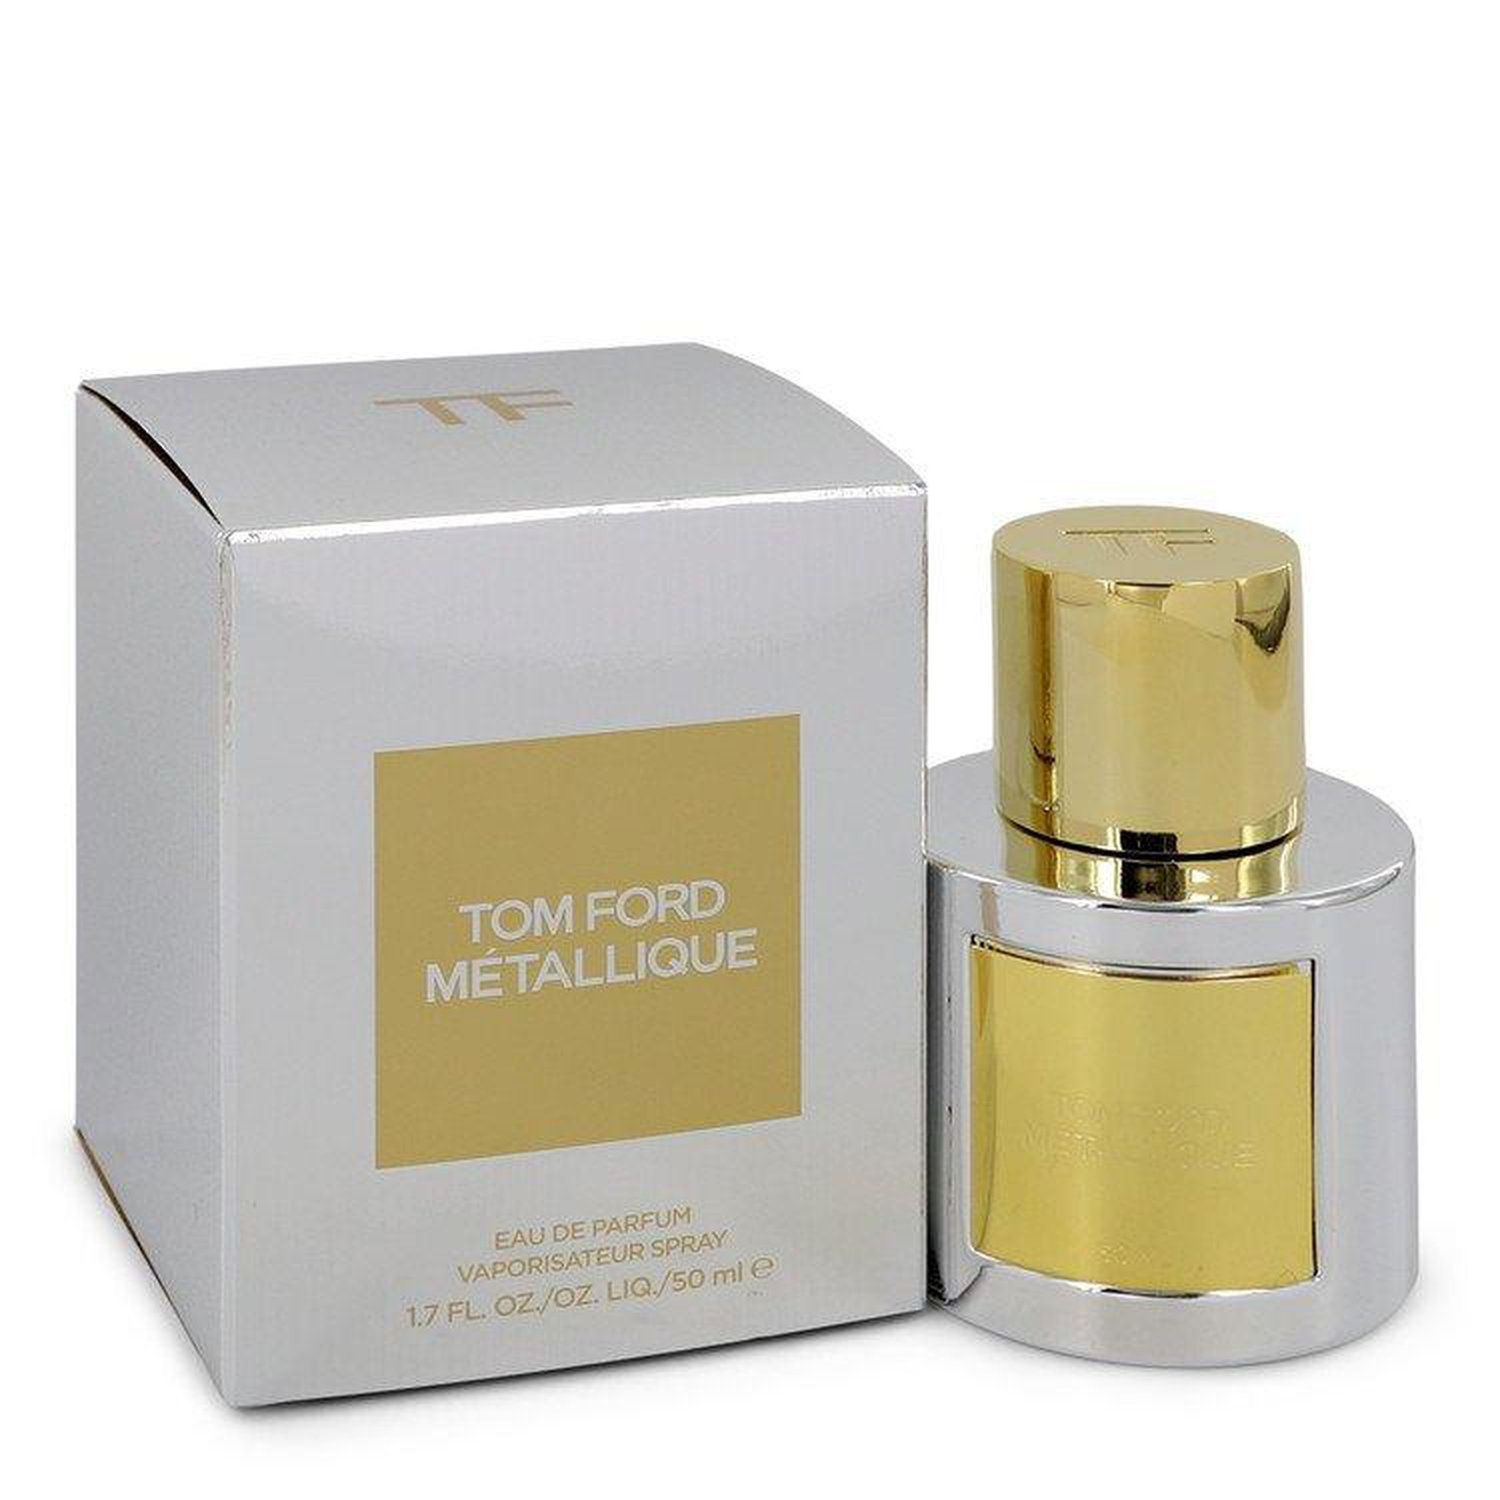 Tom Ford Metallique by Tom Ford Eau De Parfum Spray (Women) 1.7 oz